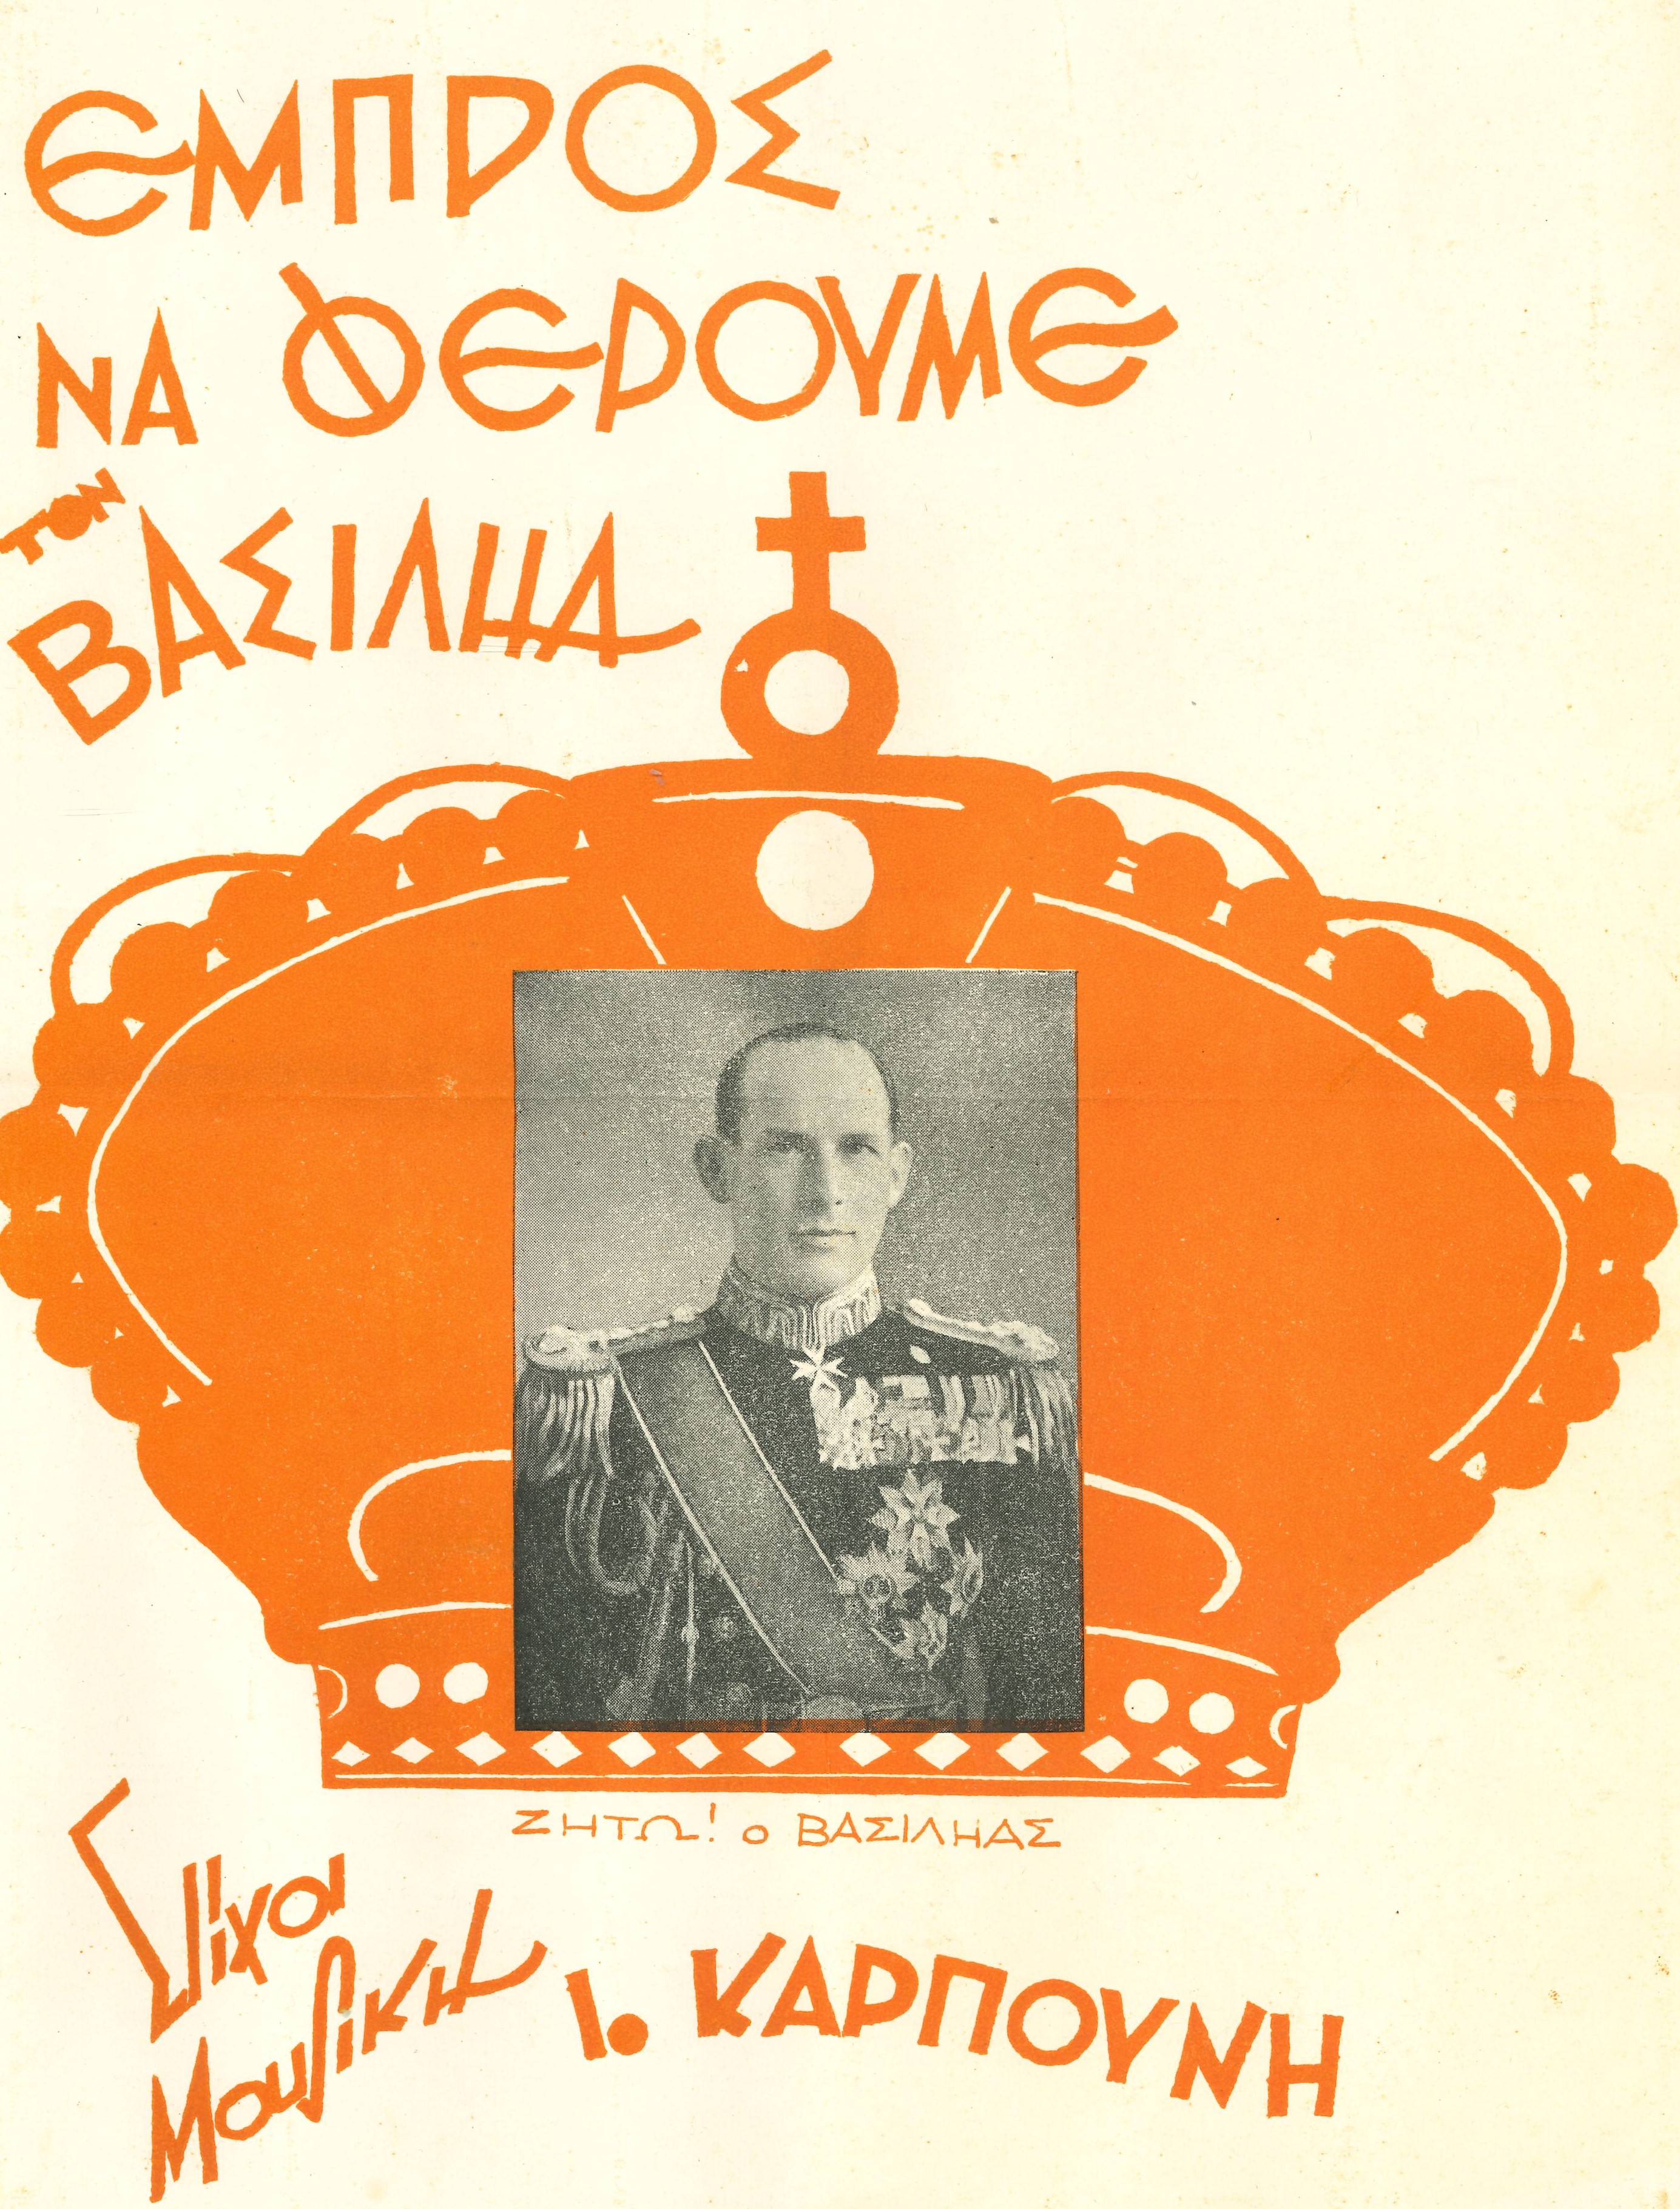 Man sieht den Titel der Komposition in oranger Schrift. In der Mitte eine orange Krone, darauf ein Foto des Königs.